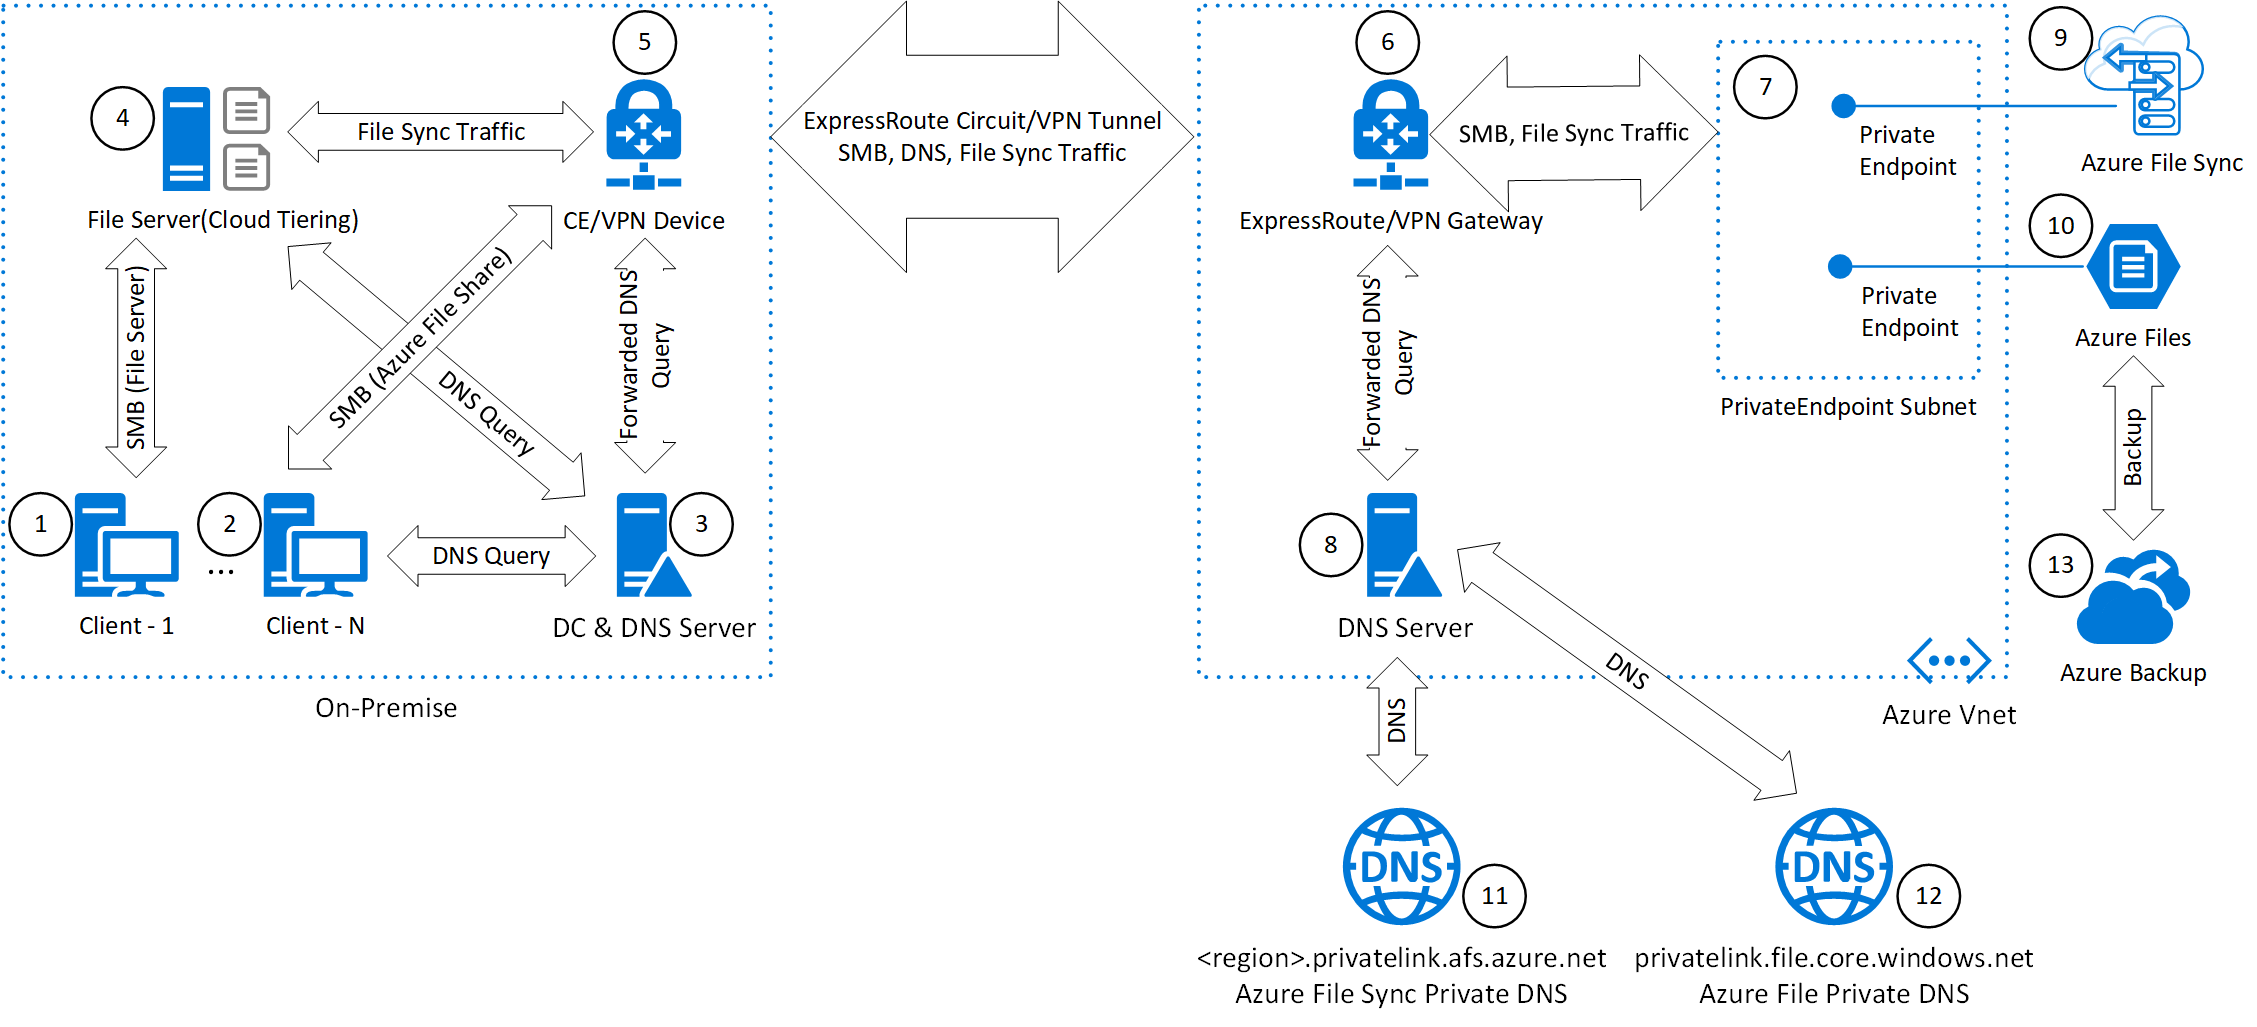 企业级云文件共享关系图，该图显示客户端如何通过云分层文件服务器本地访问 Azure 文件共享，或者在专用网络环境中通过 ExpressRoute 专用对等互连或 VPN 隧道进行远程访问。